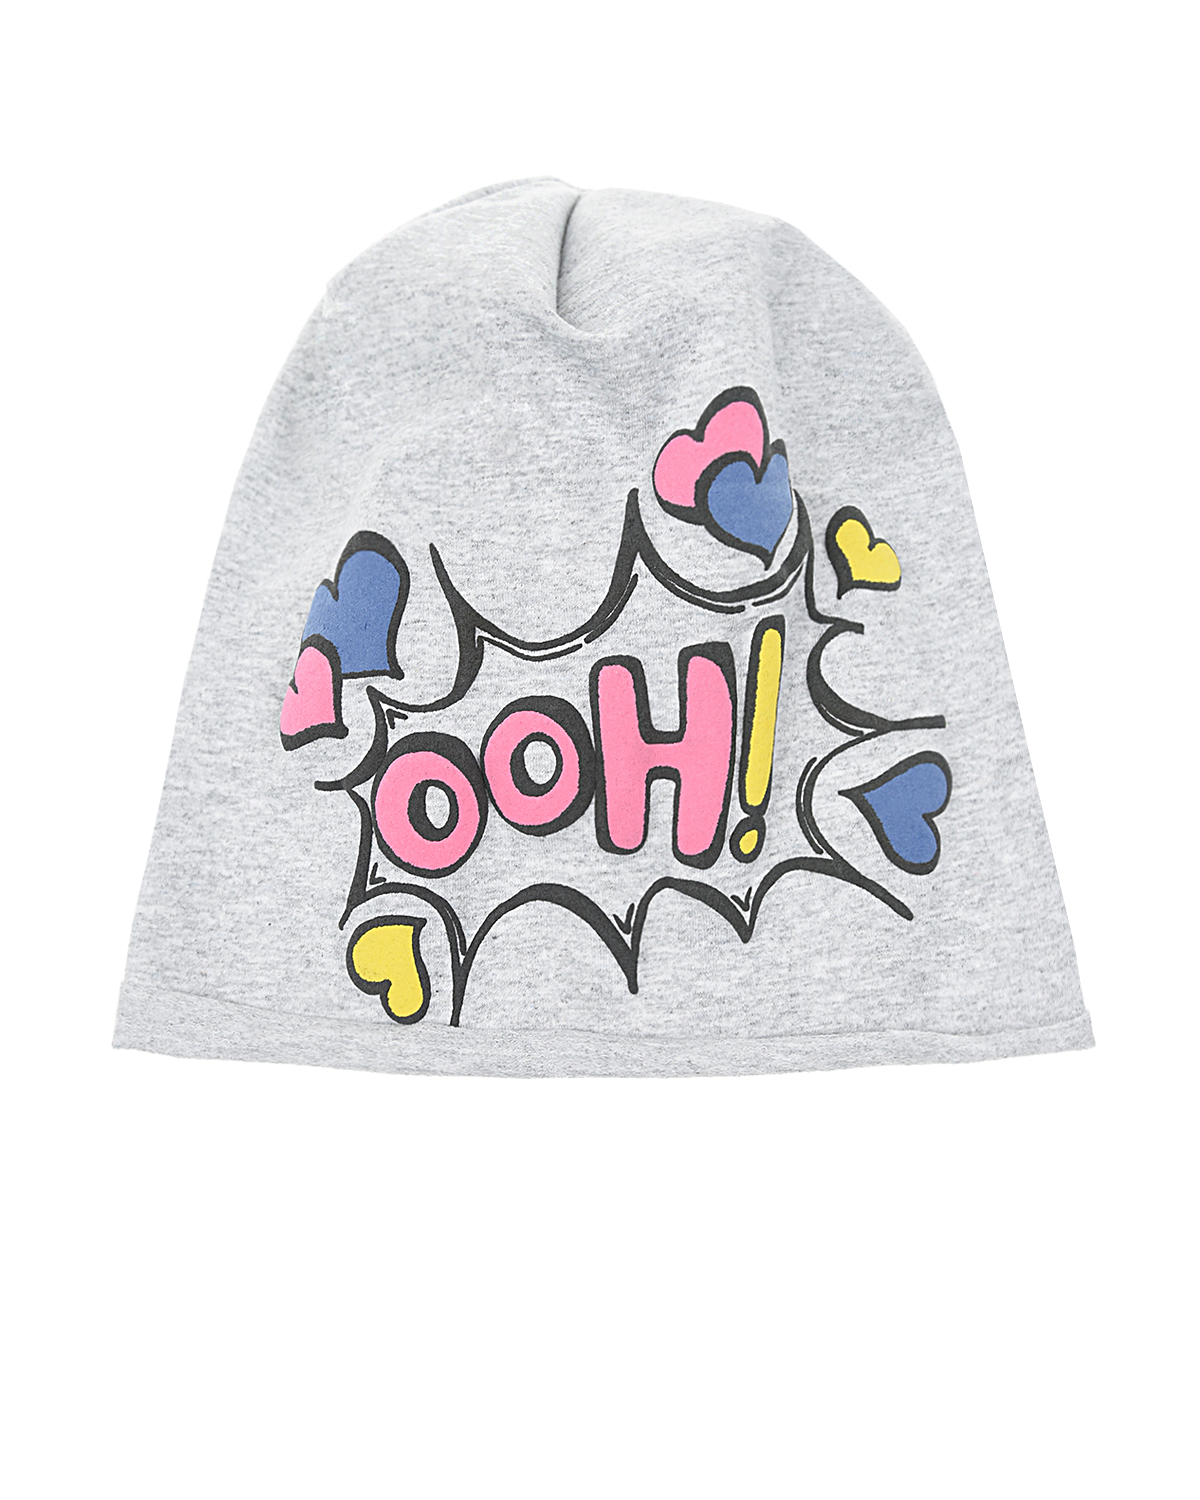 Трикотажная шапка с принтом "OOH!" Catya детская, размер 51, цвет серый - фото 1